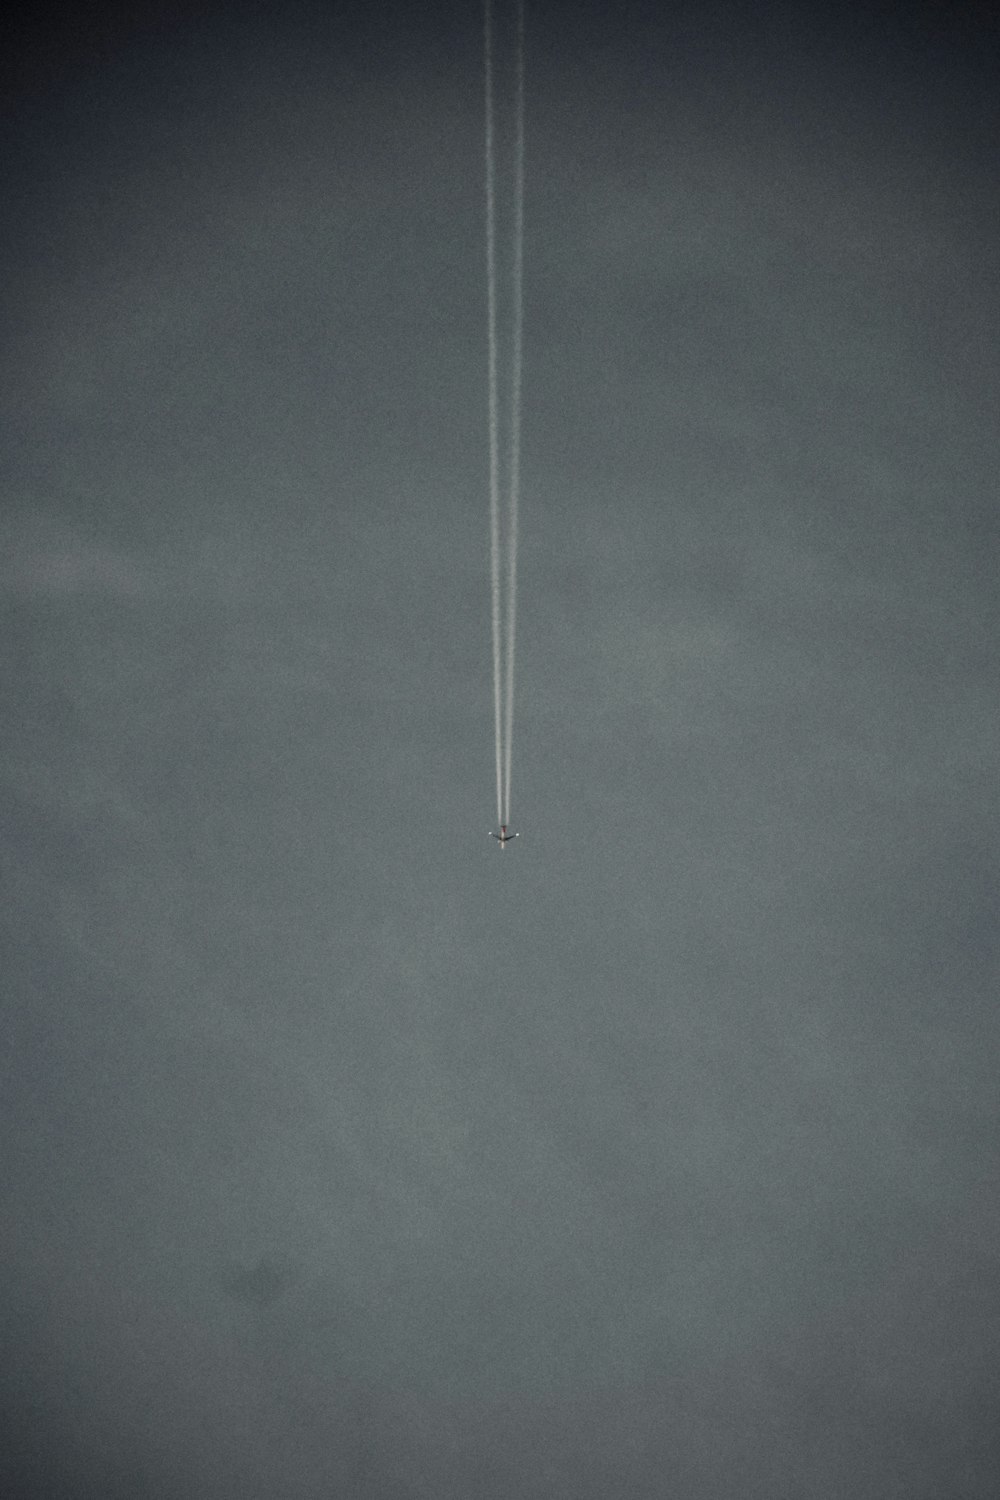 um avião está voando no céu com um contrail